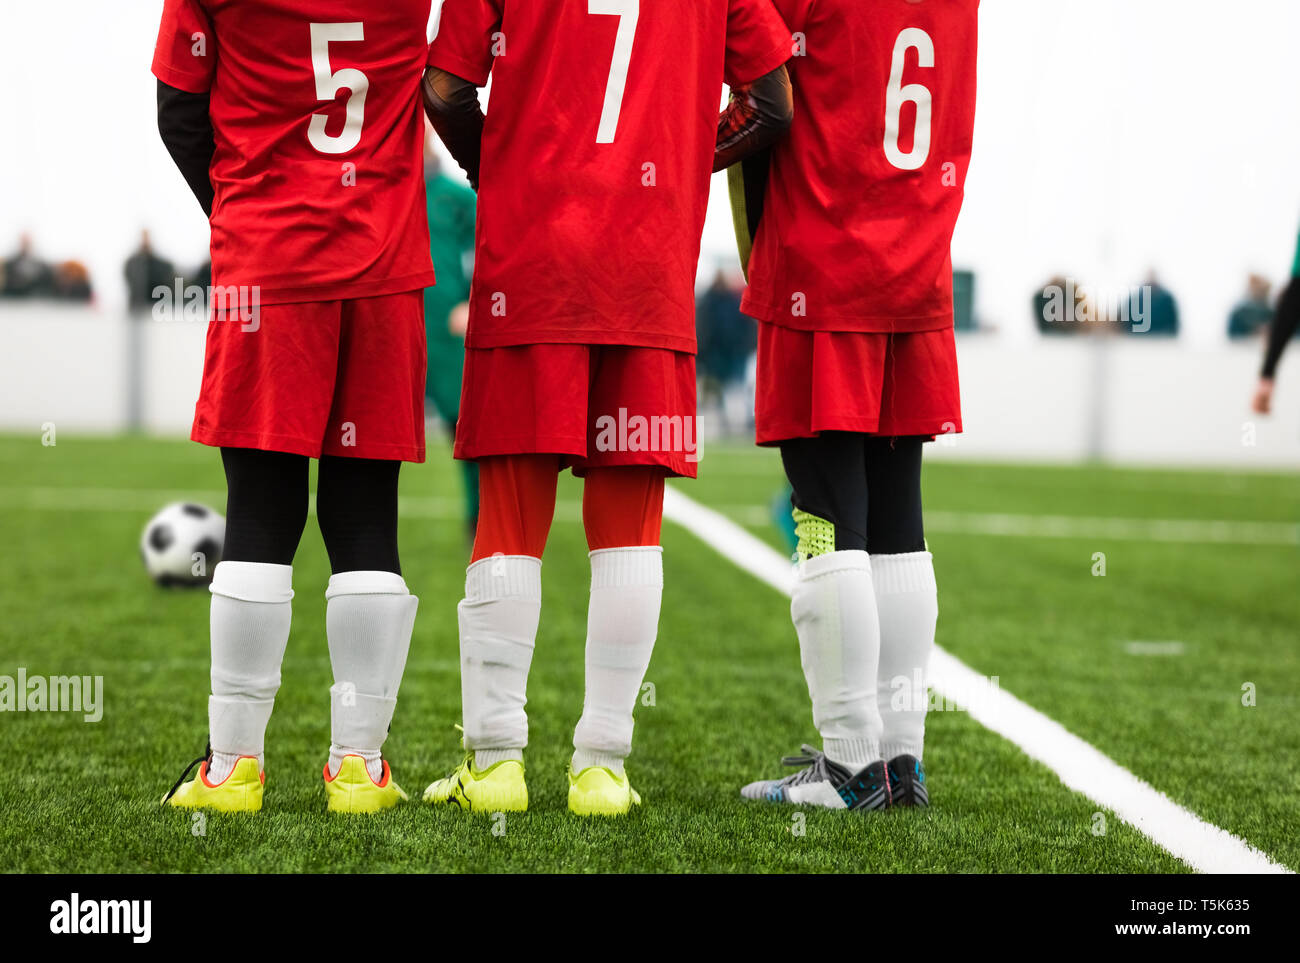 Jugadores fútbol Junior de pie en una pared. Free Kick situación el de fútbol. Los jugadores vestidos de rojo Camiseta de camisetas con números en la espalda. Así